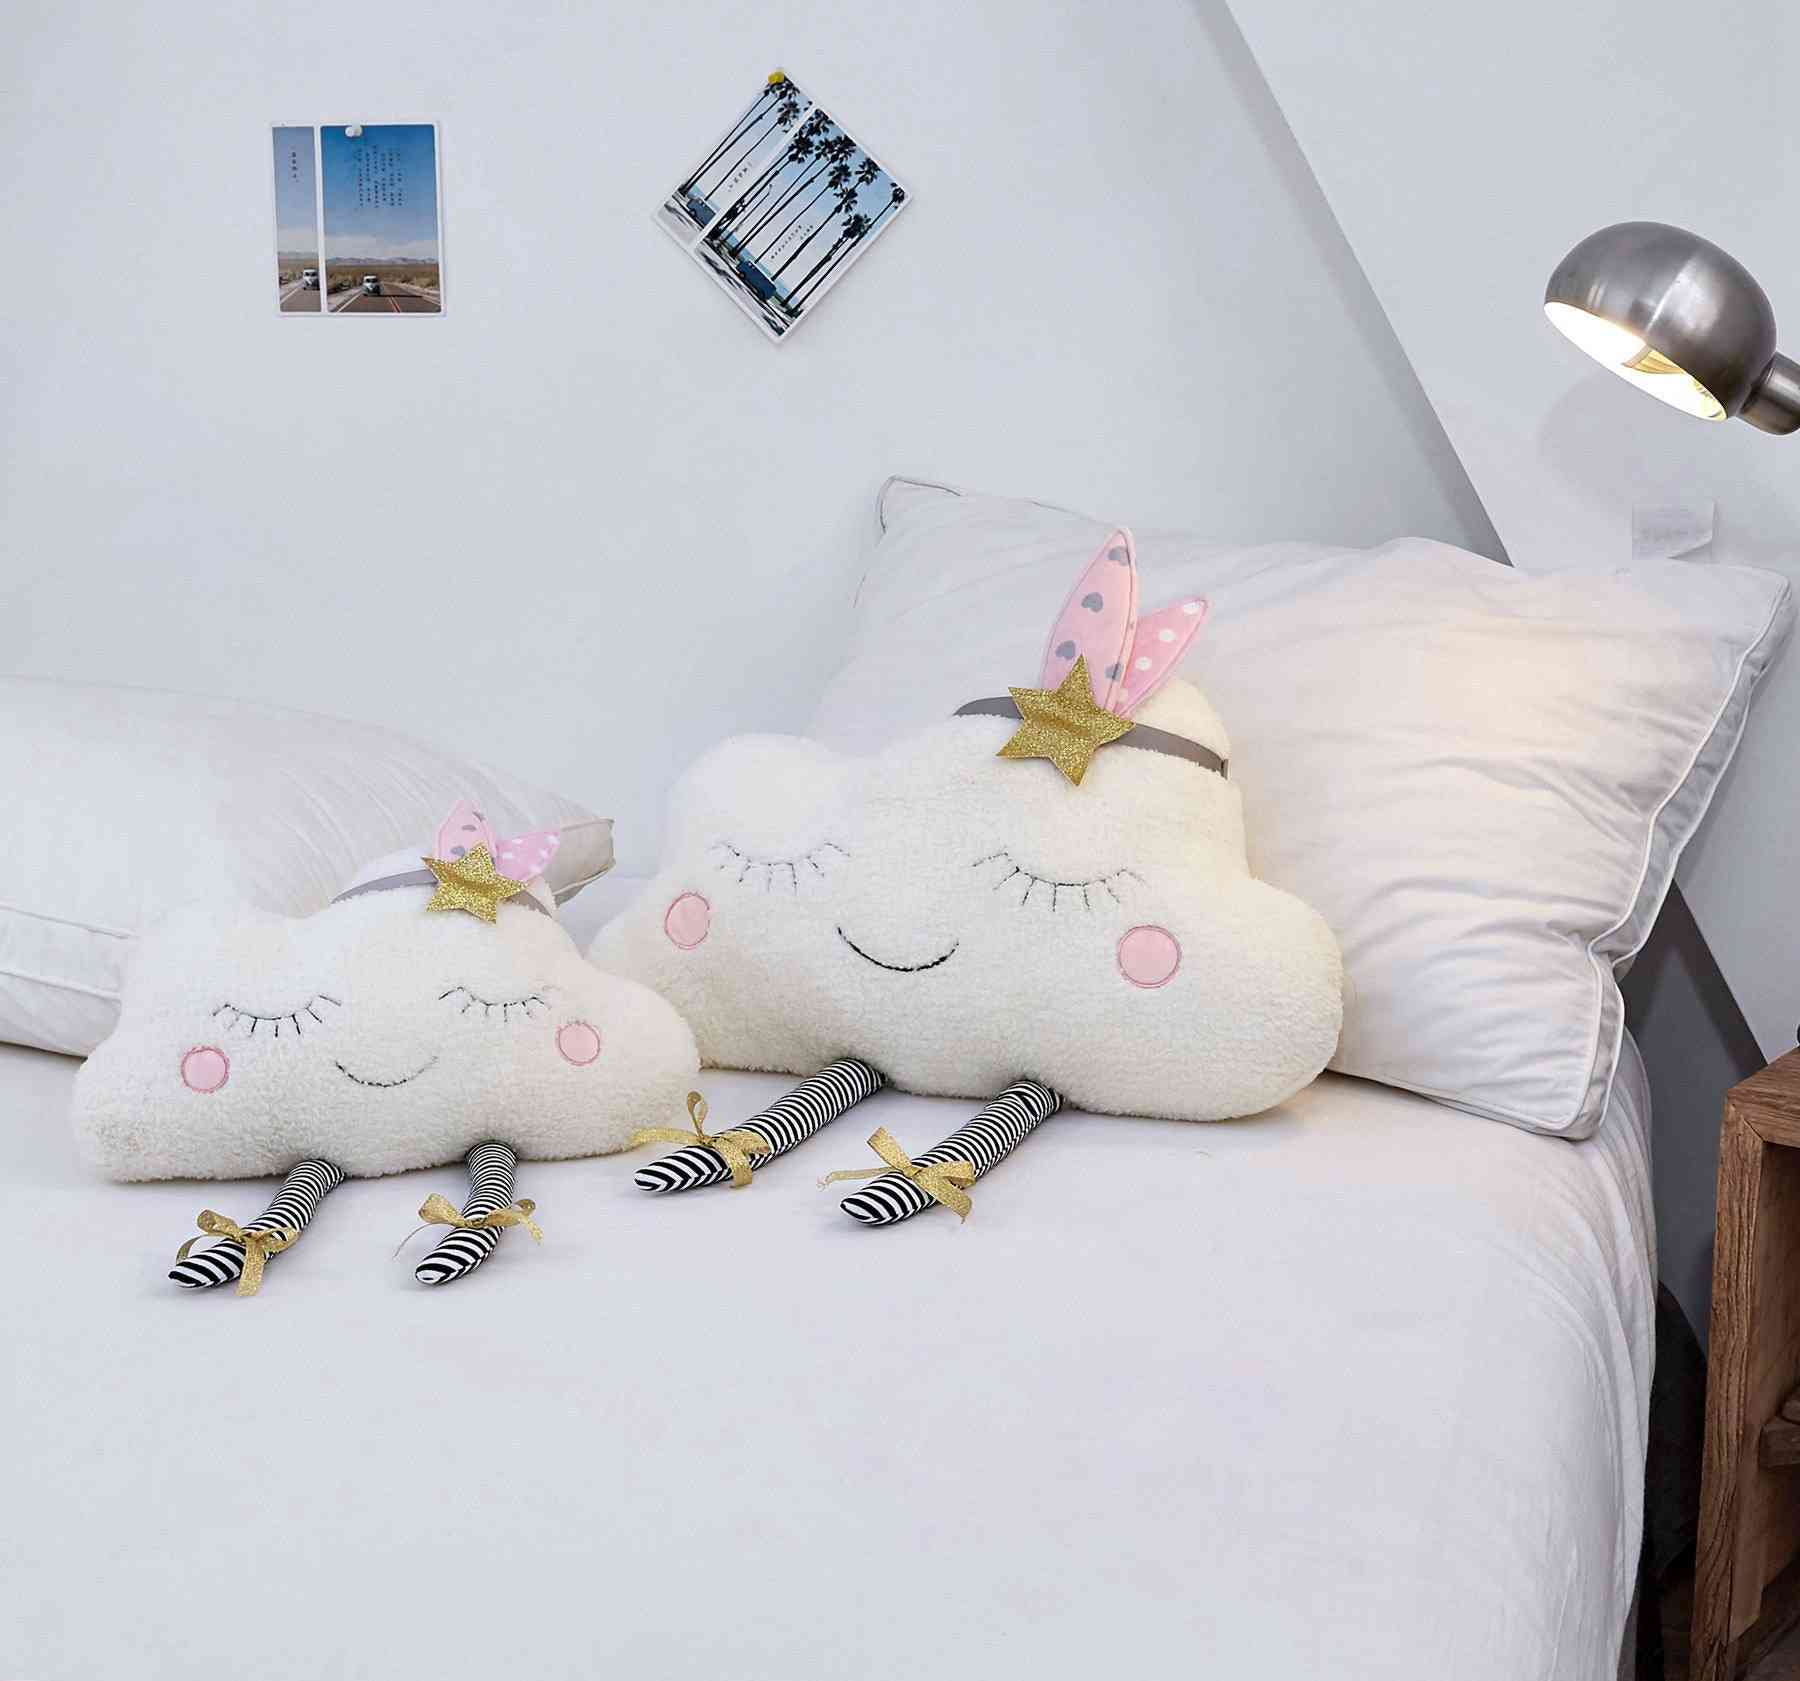 Dekoracja domu ins chmura pluszowa poduszka miękka poduszka kawaii chmura wypchane pluszowe zabawki dla dzieci dziecko poduszka dla dzieci dziewczyna prezent-25cm